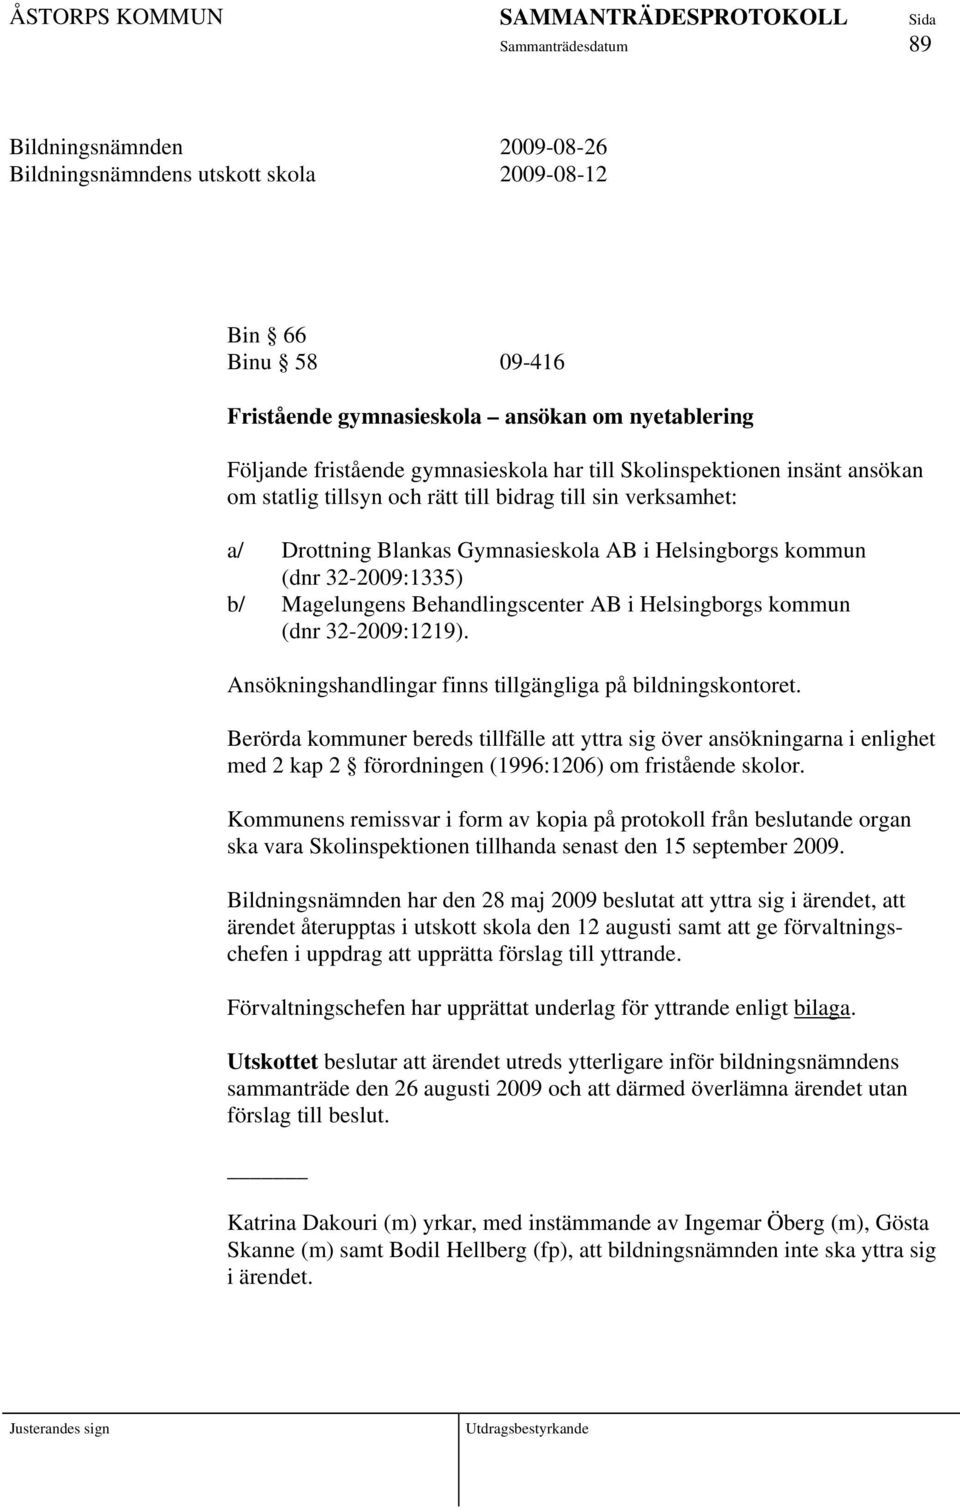 Helsingborgs kommun (dnr 32-2009:1219). Ansökningshandlingar finns tillgängliga på bildningskontoret.